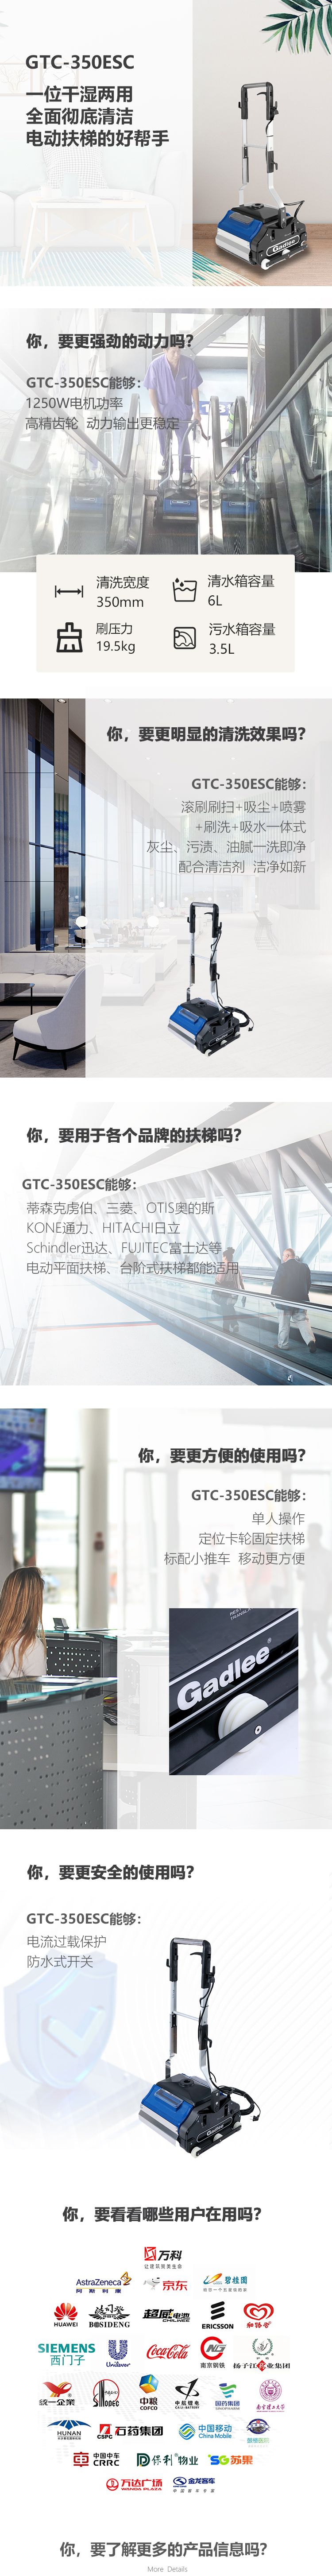 新-GTC-350ESC详情页（大字版本）_01